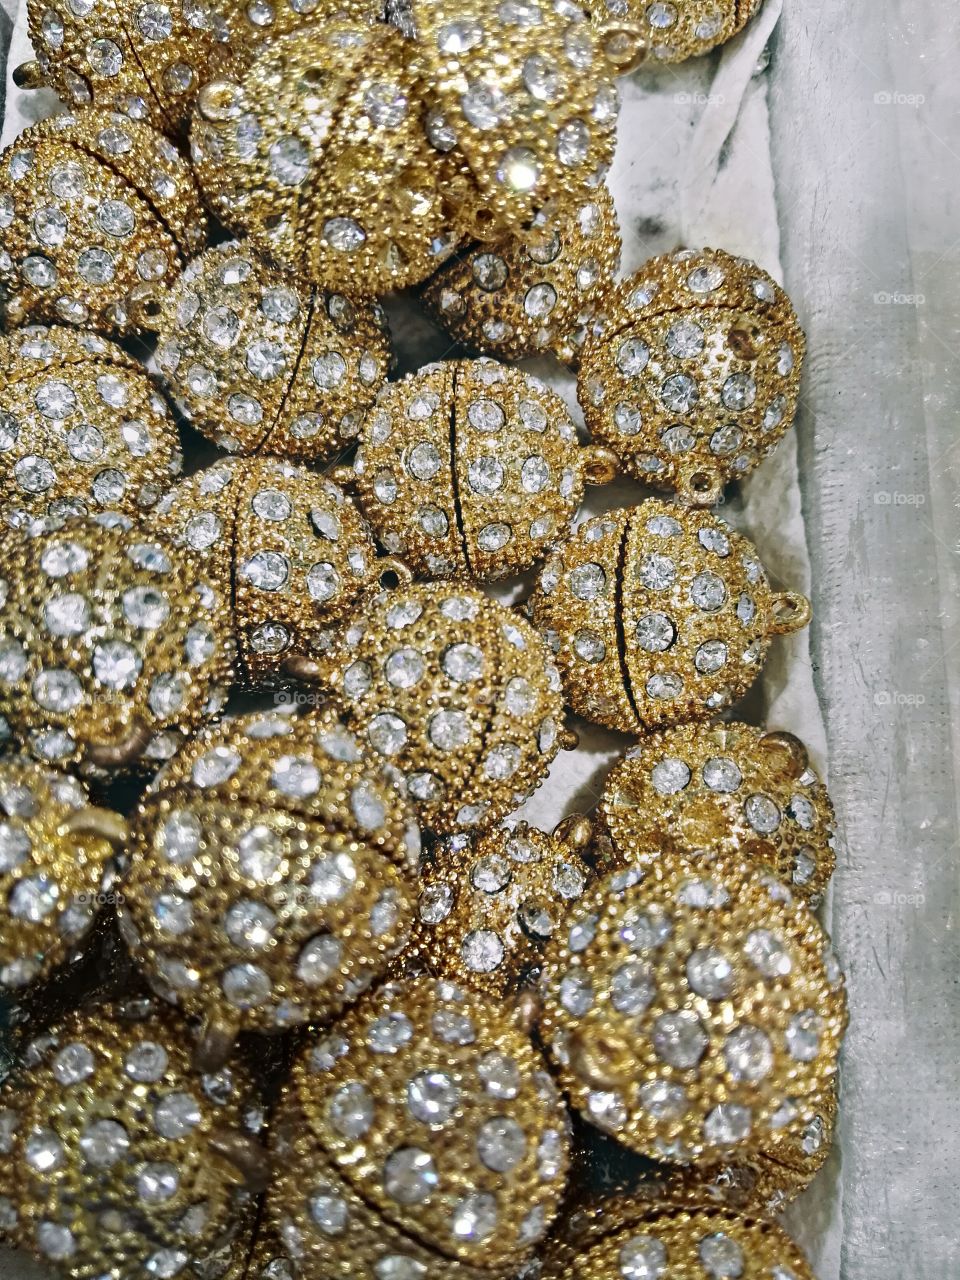 Full frame of golden spheres